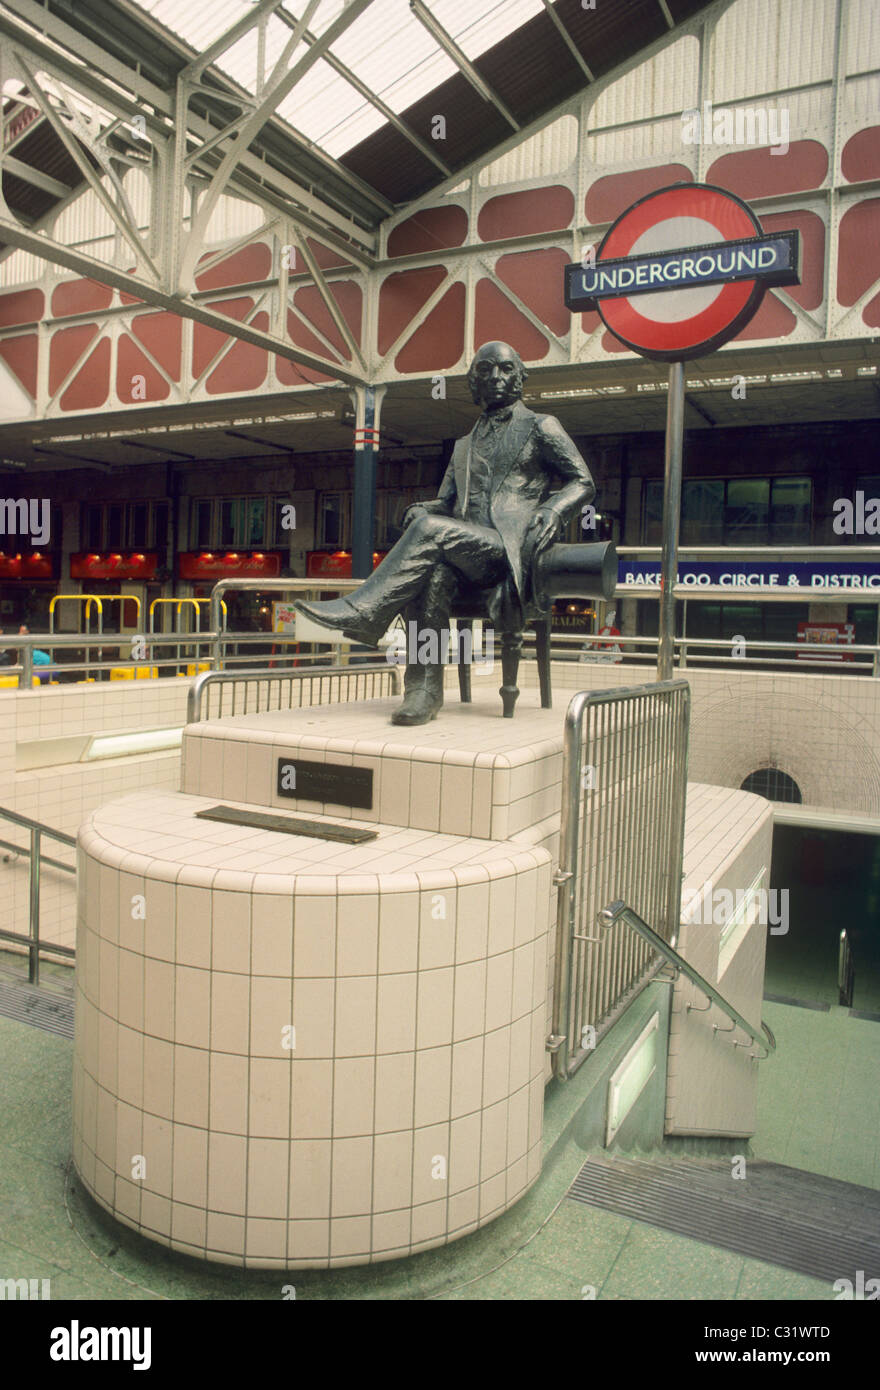 Paddington Railway Station, I. K. Brunel Statue, Underground Entrance London England UK English stations statues seated figure Stock Photo